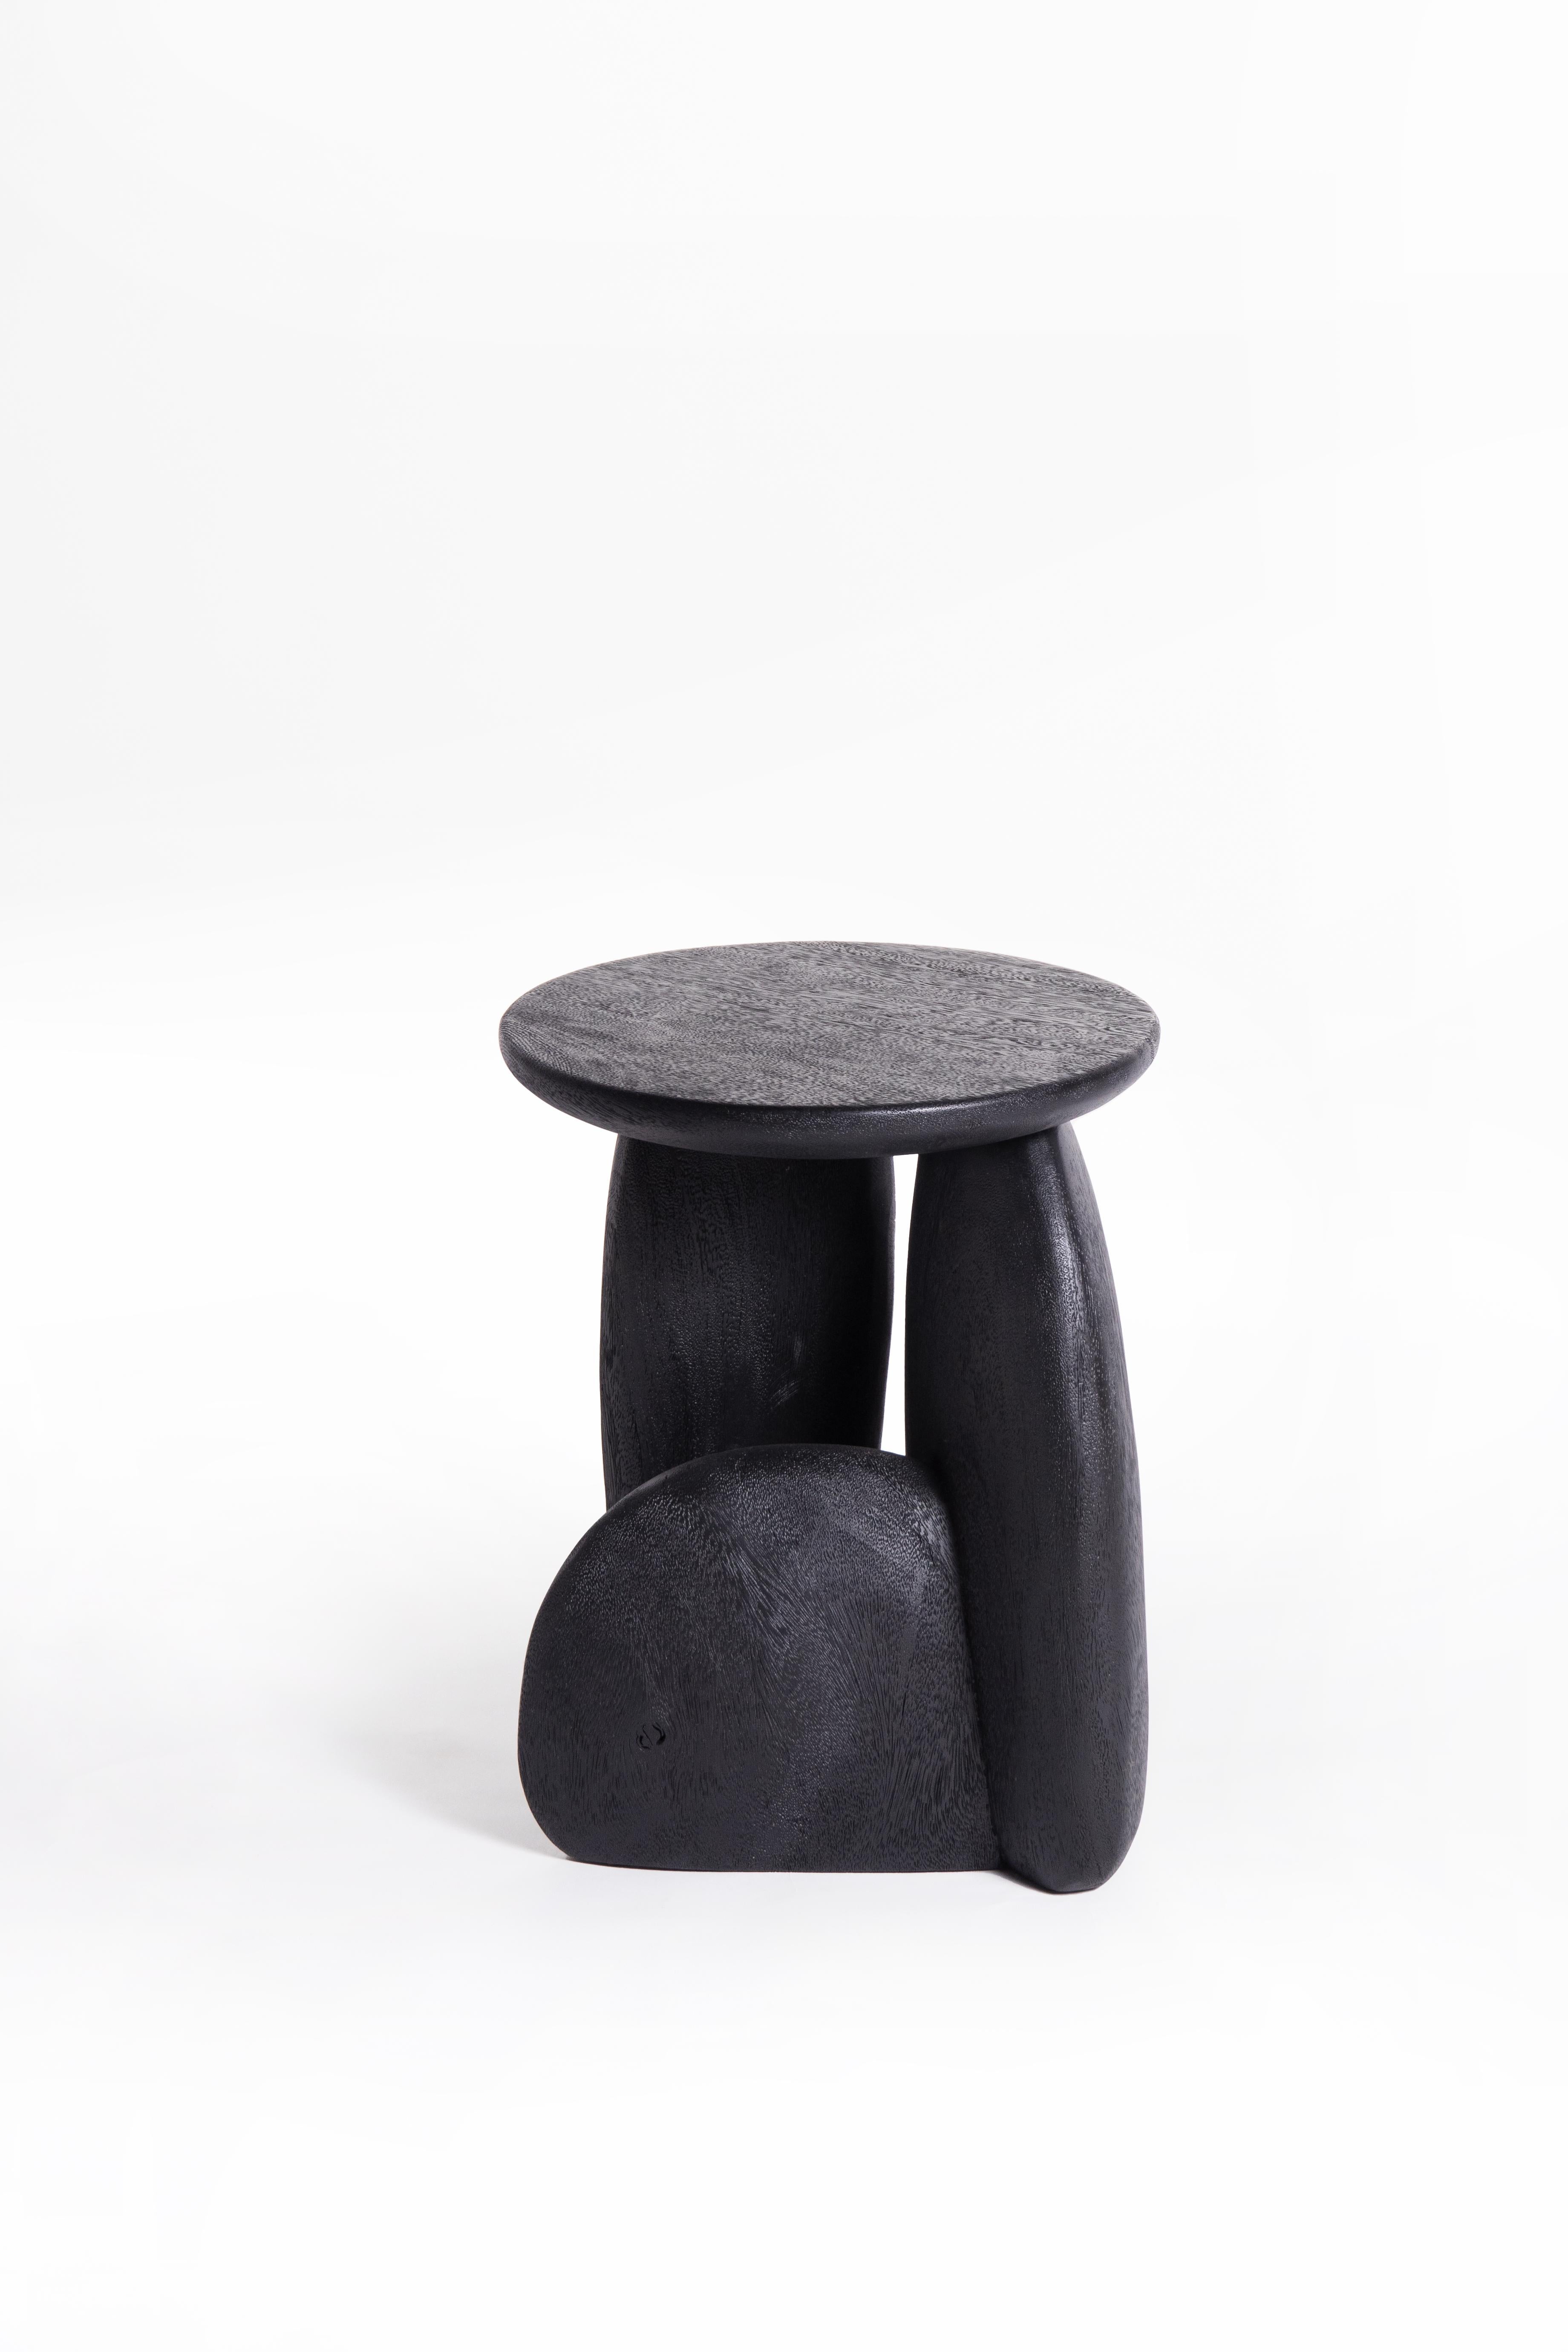 pebble stools